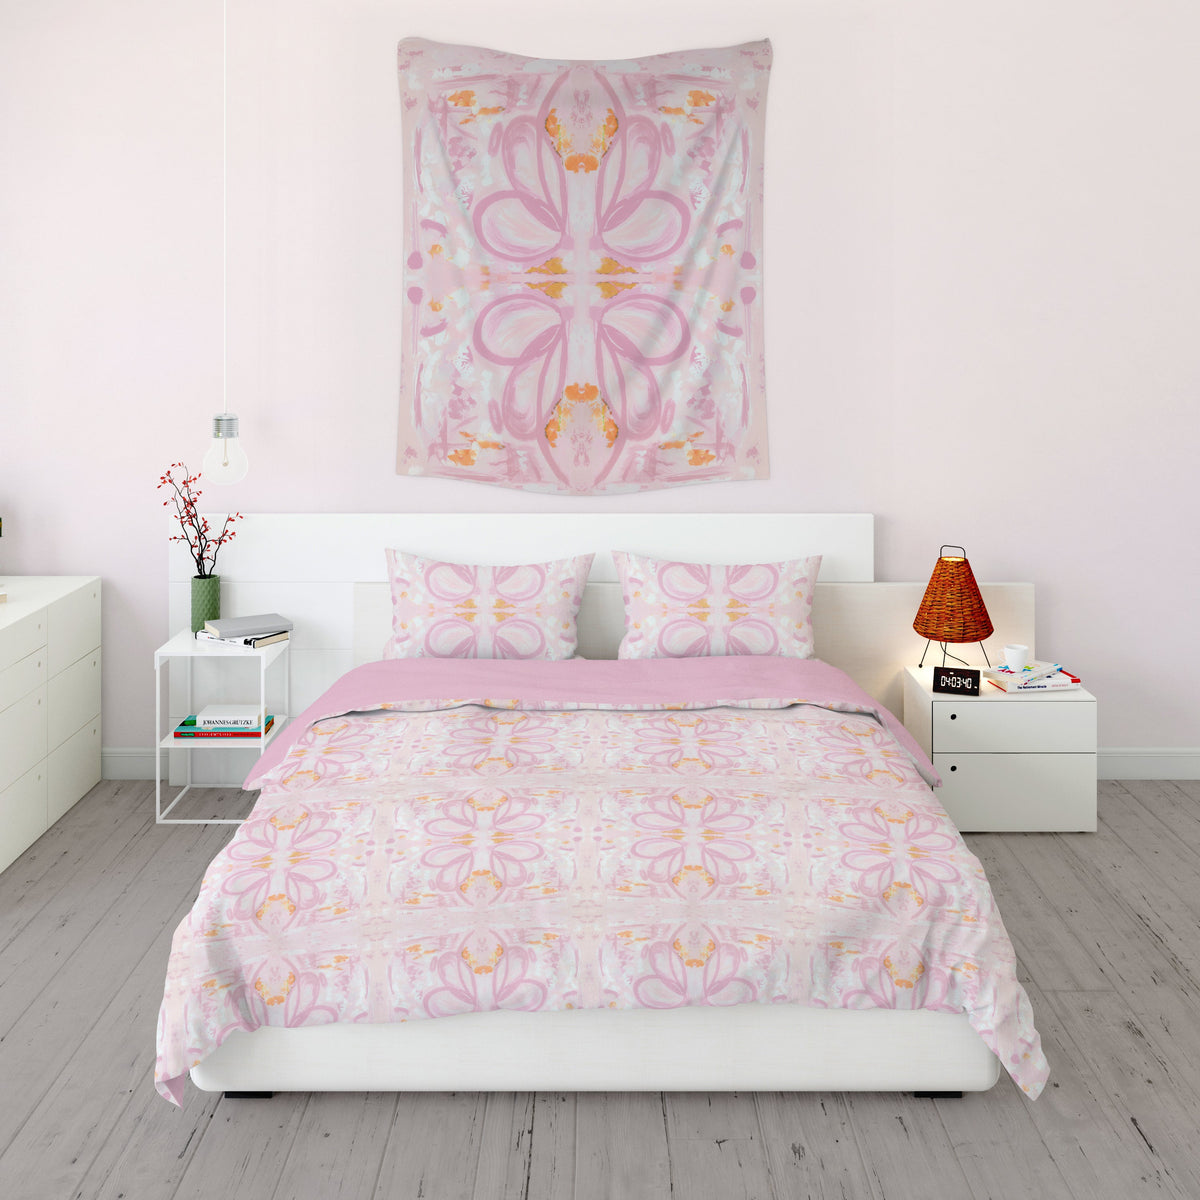 Duvet - Kaleidoscope Pink Bedding, Duvets MWW Full/Queen 